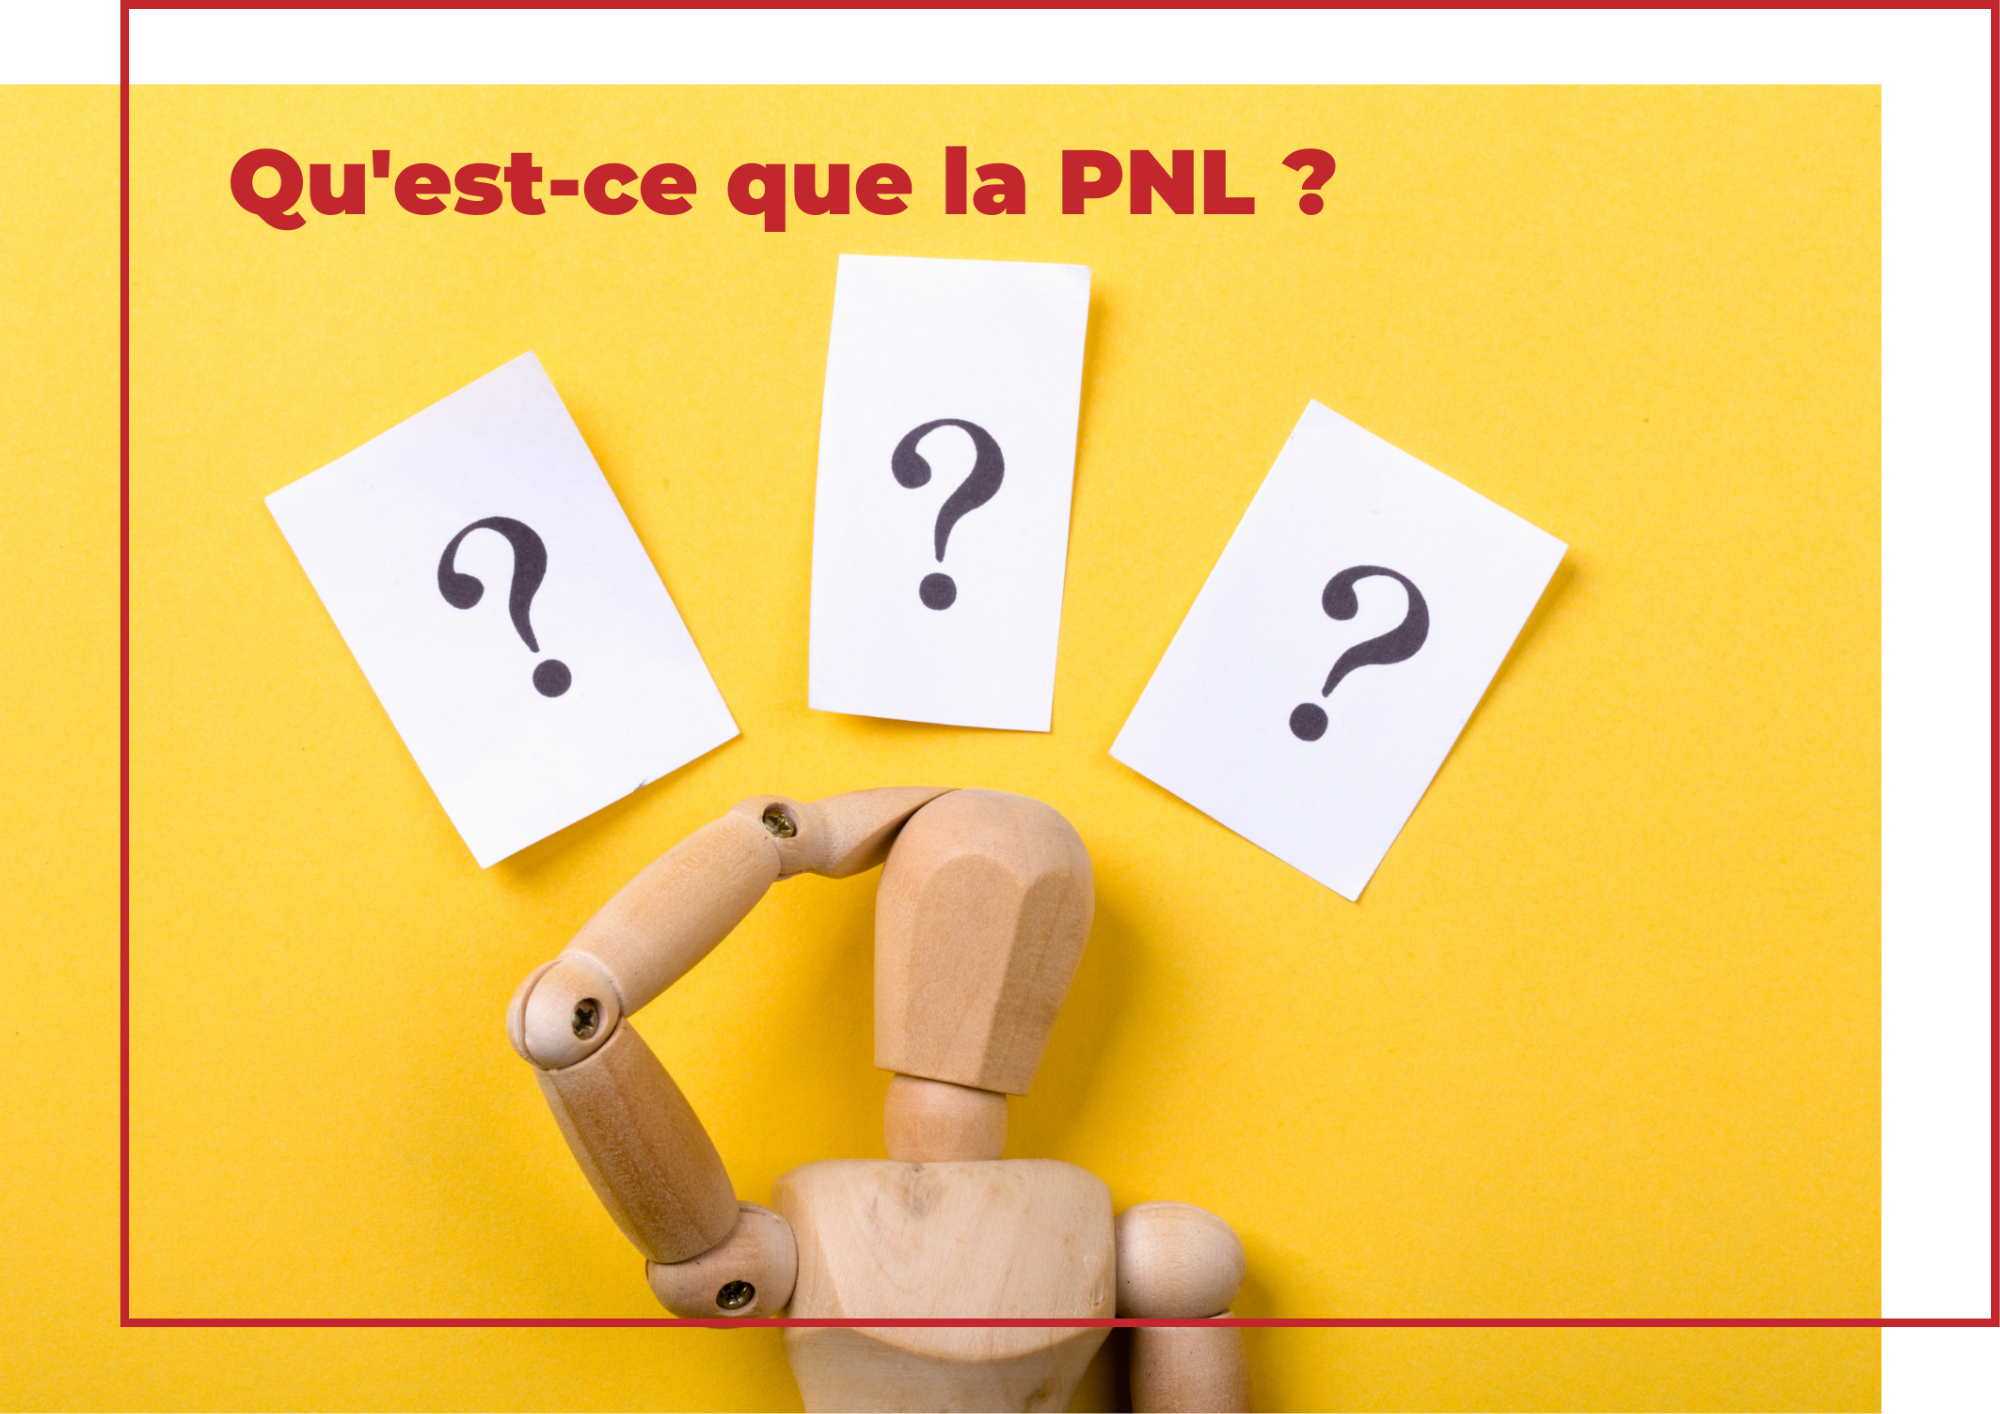 PNL : Introduction à son utilisation